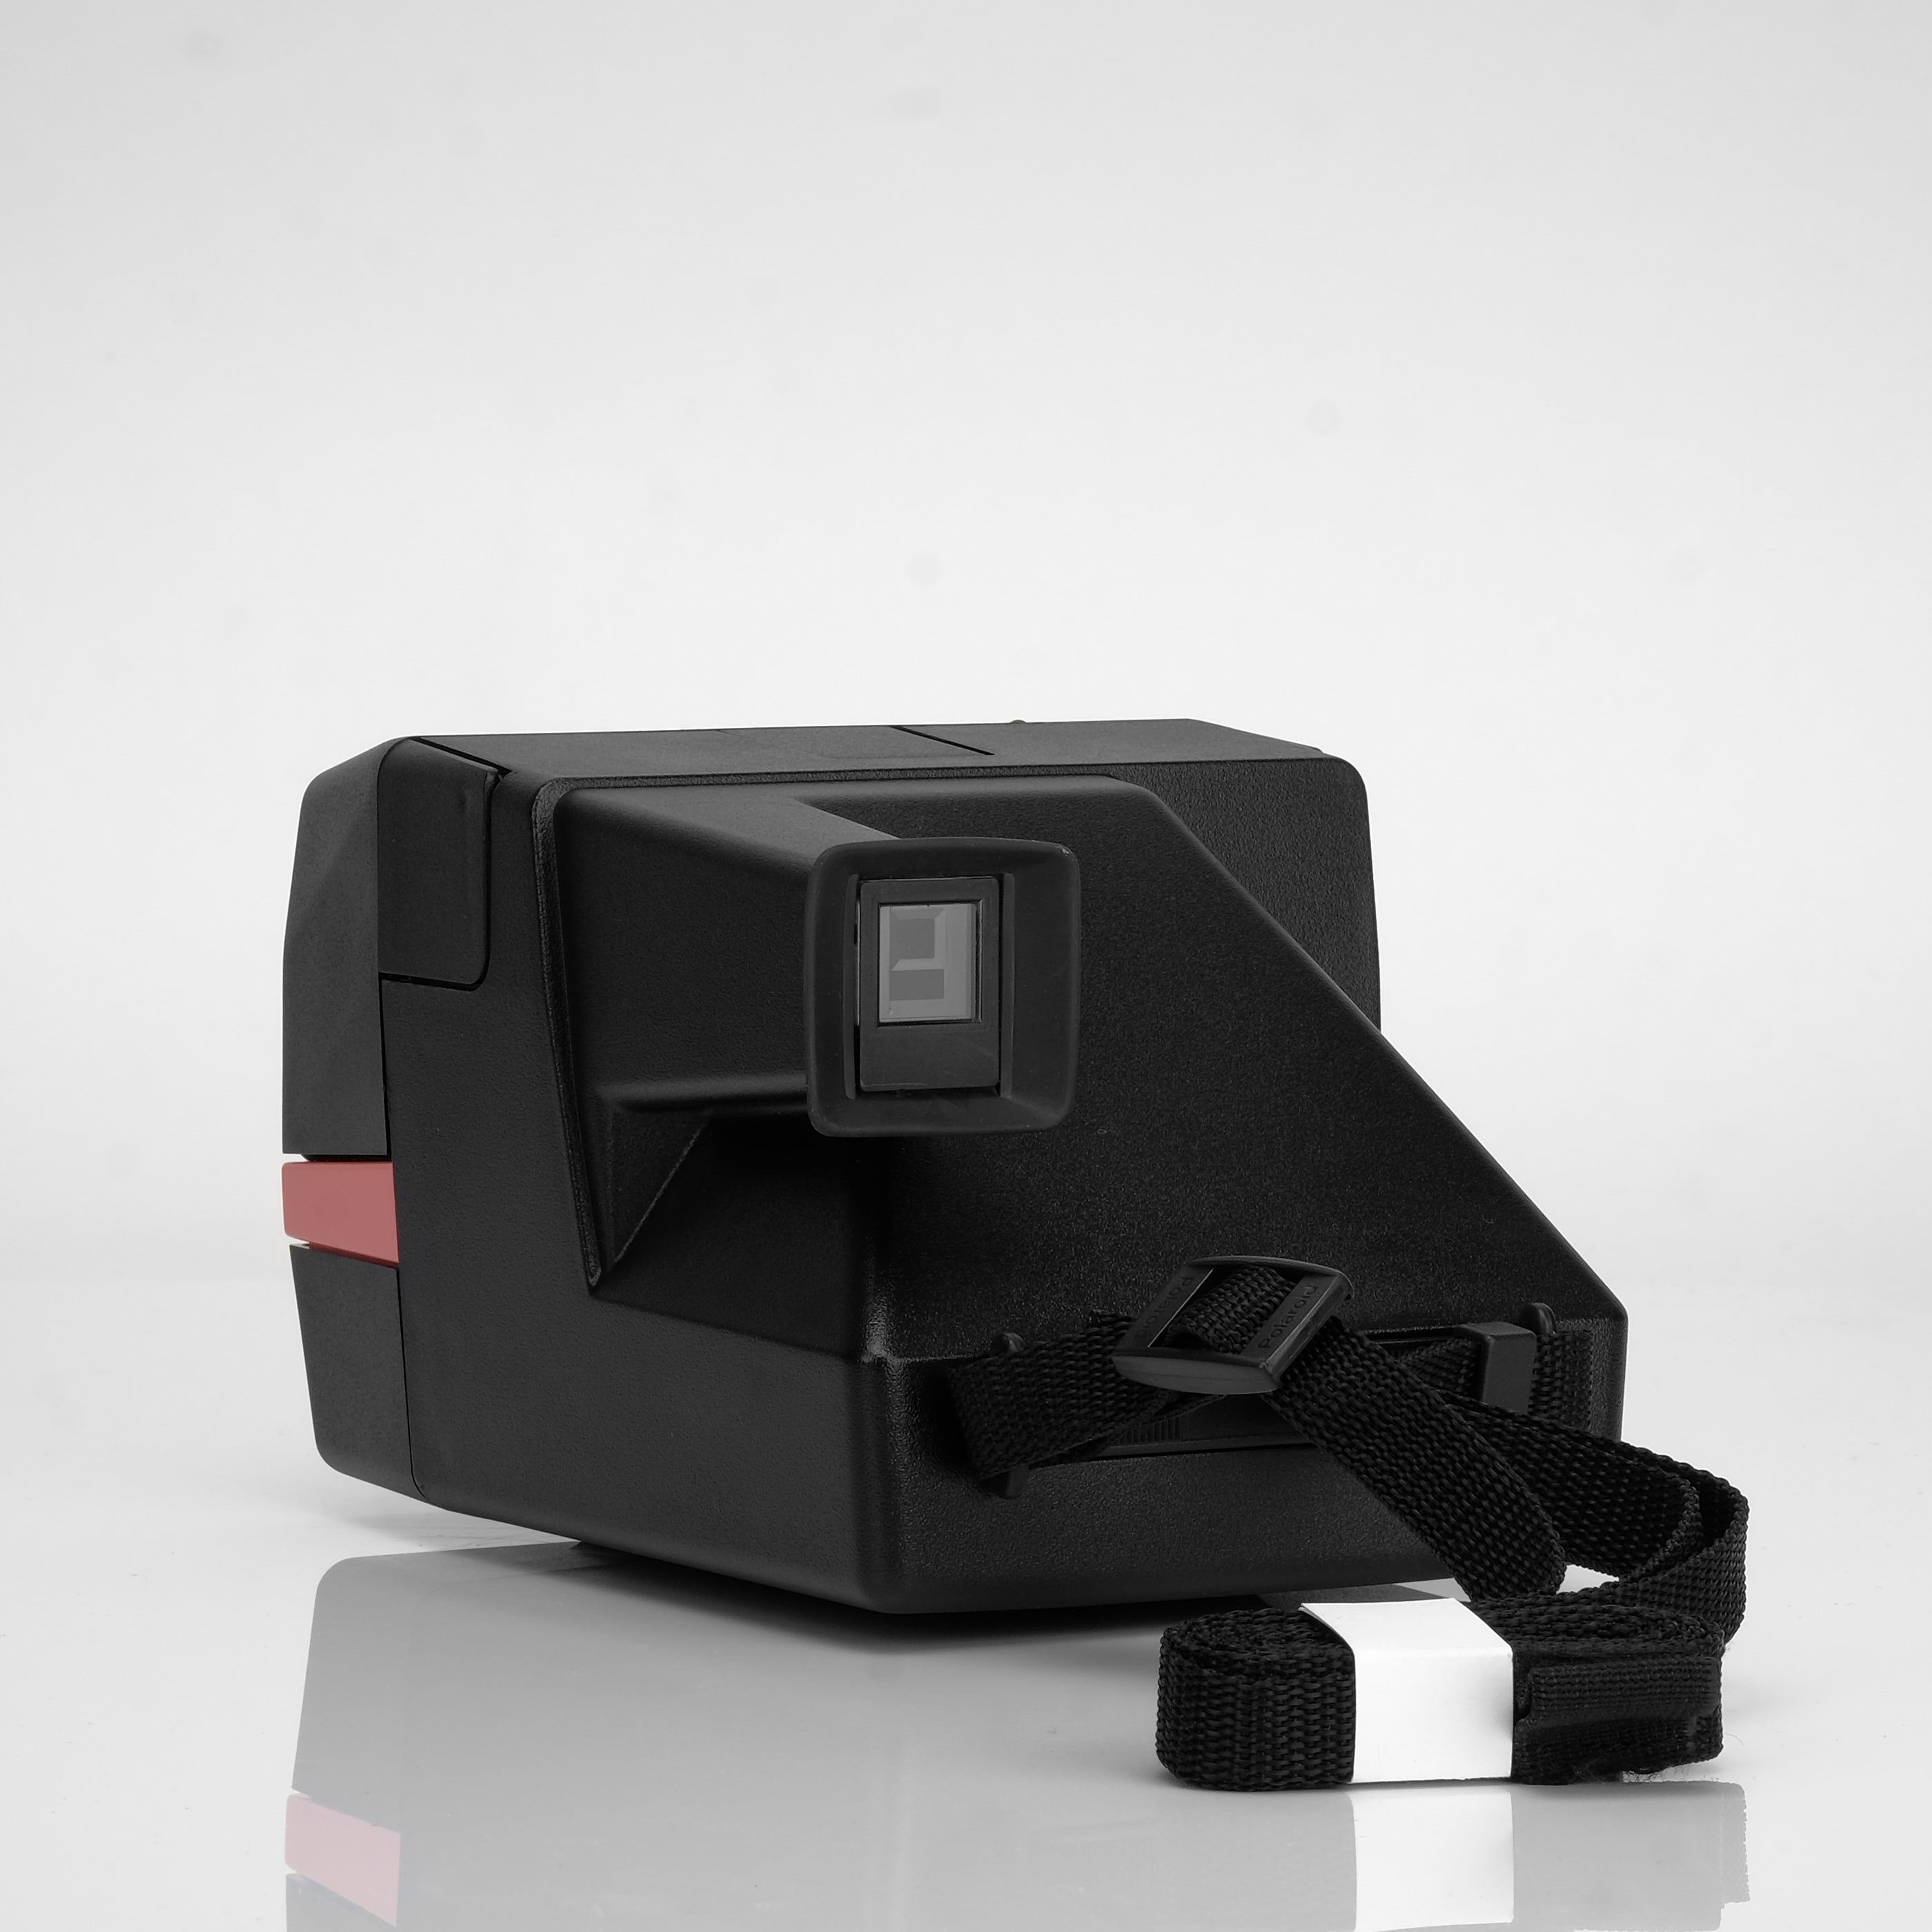 Polaroid 600 Mary Kay Instant Film Camera